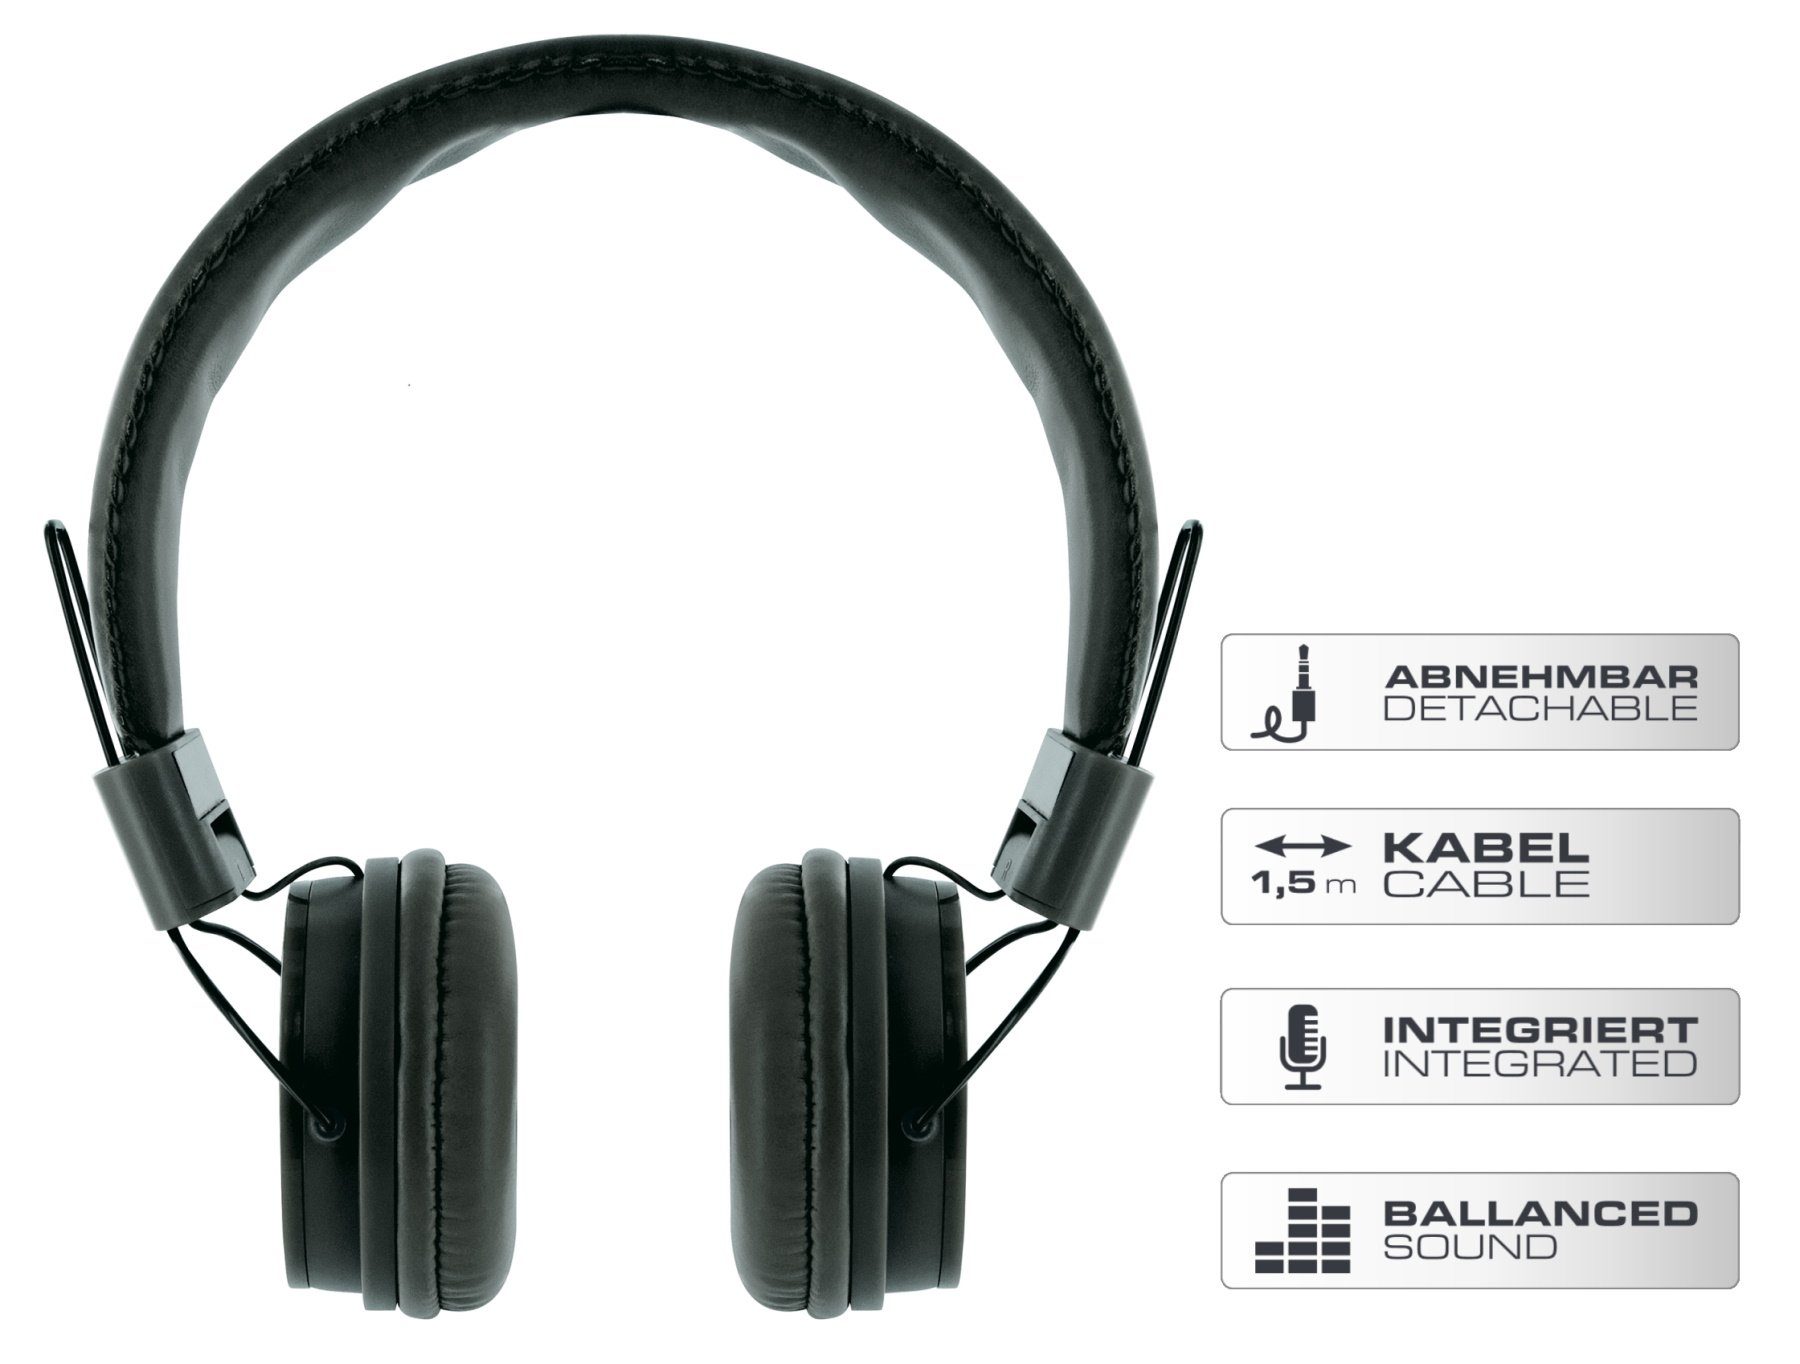 Schwaiger KH510S 513 On-Ear-Kopfhörer Kopfhörerbügel) (einstellbare